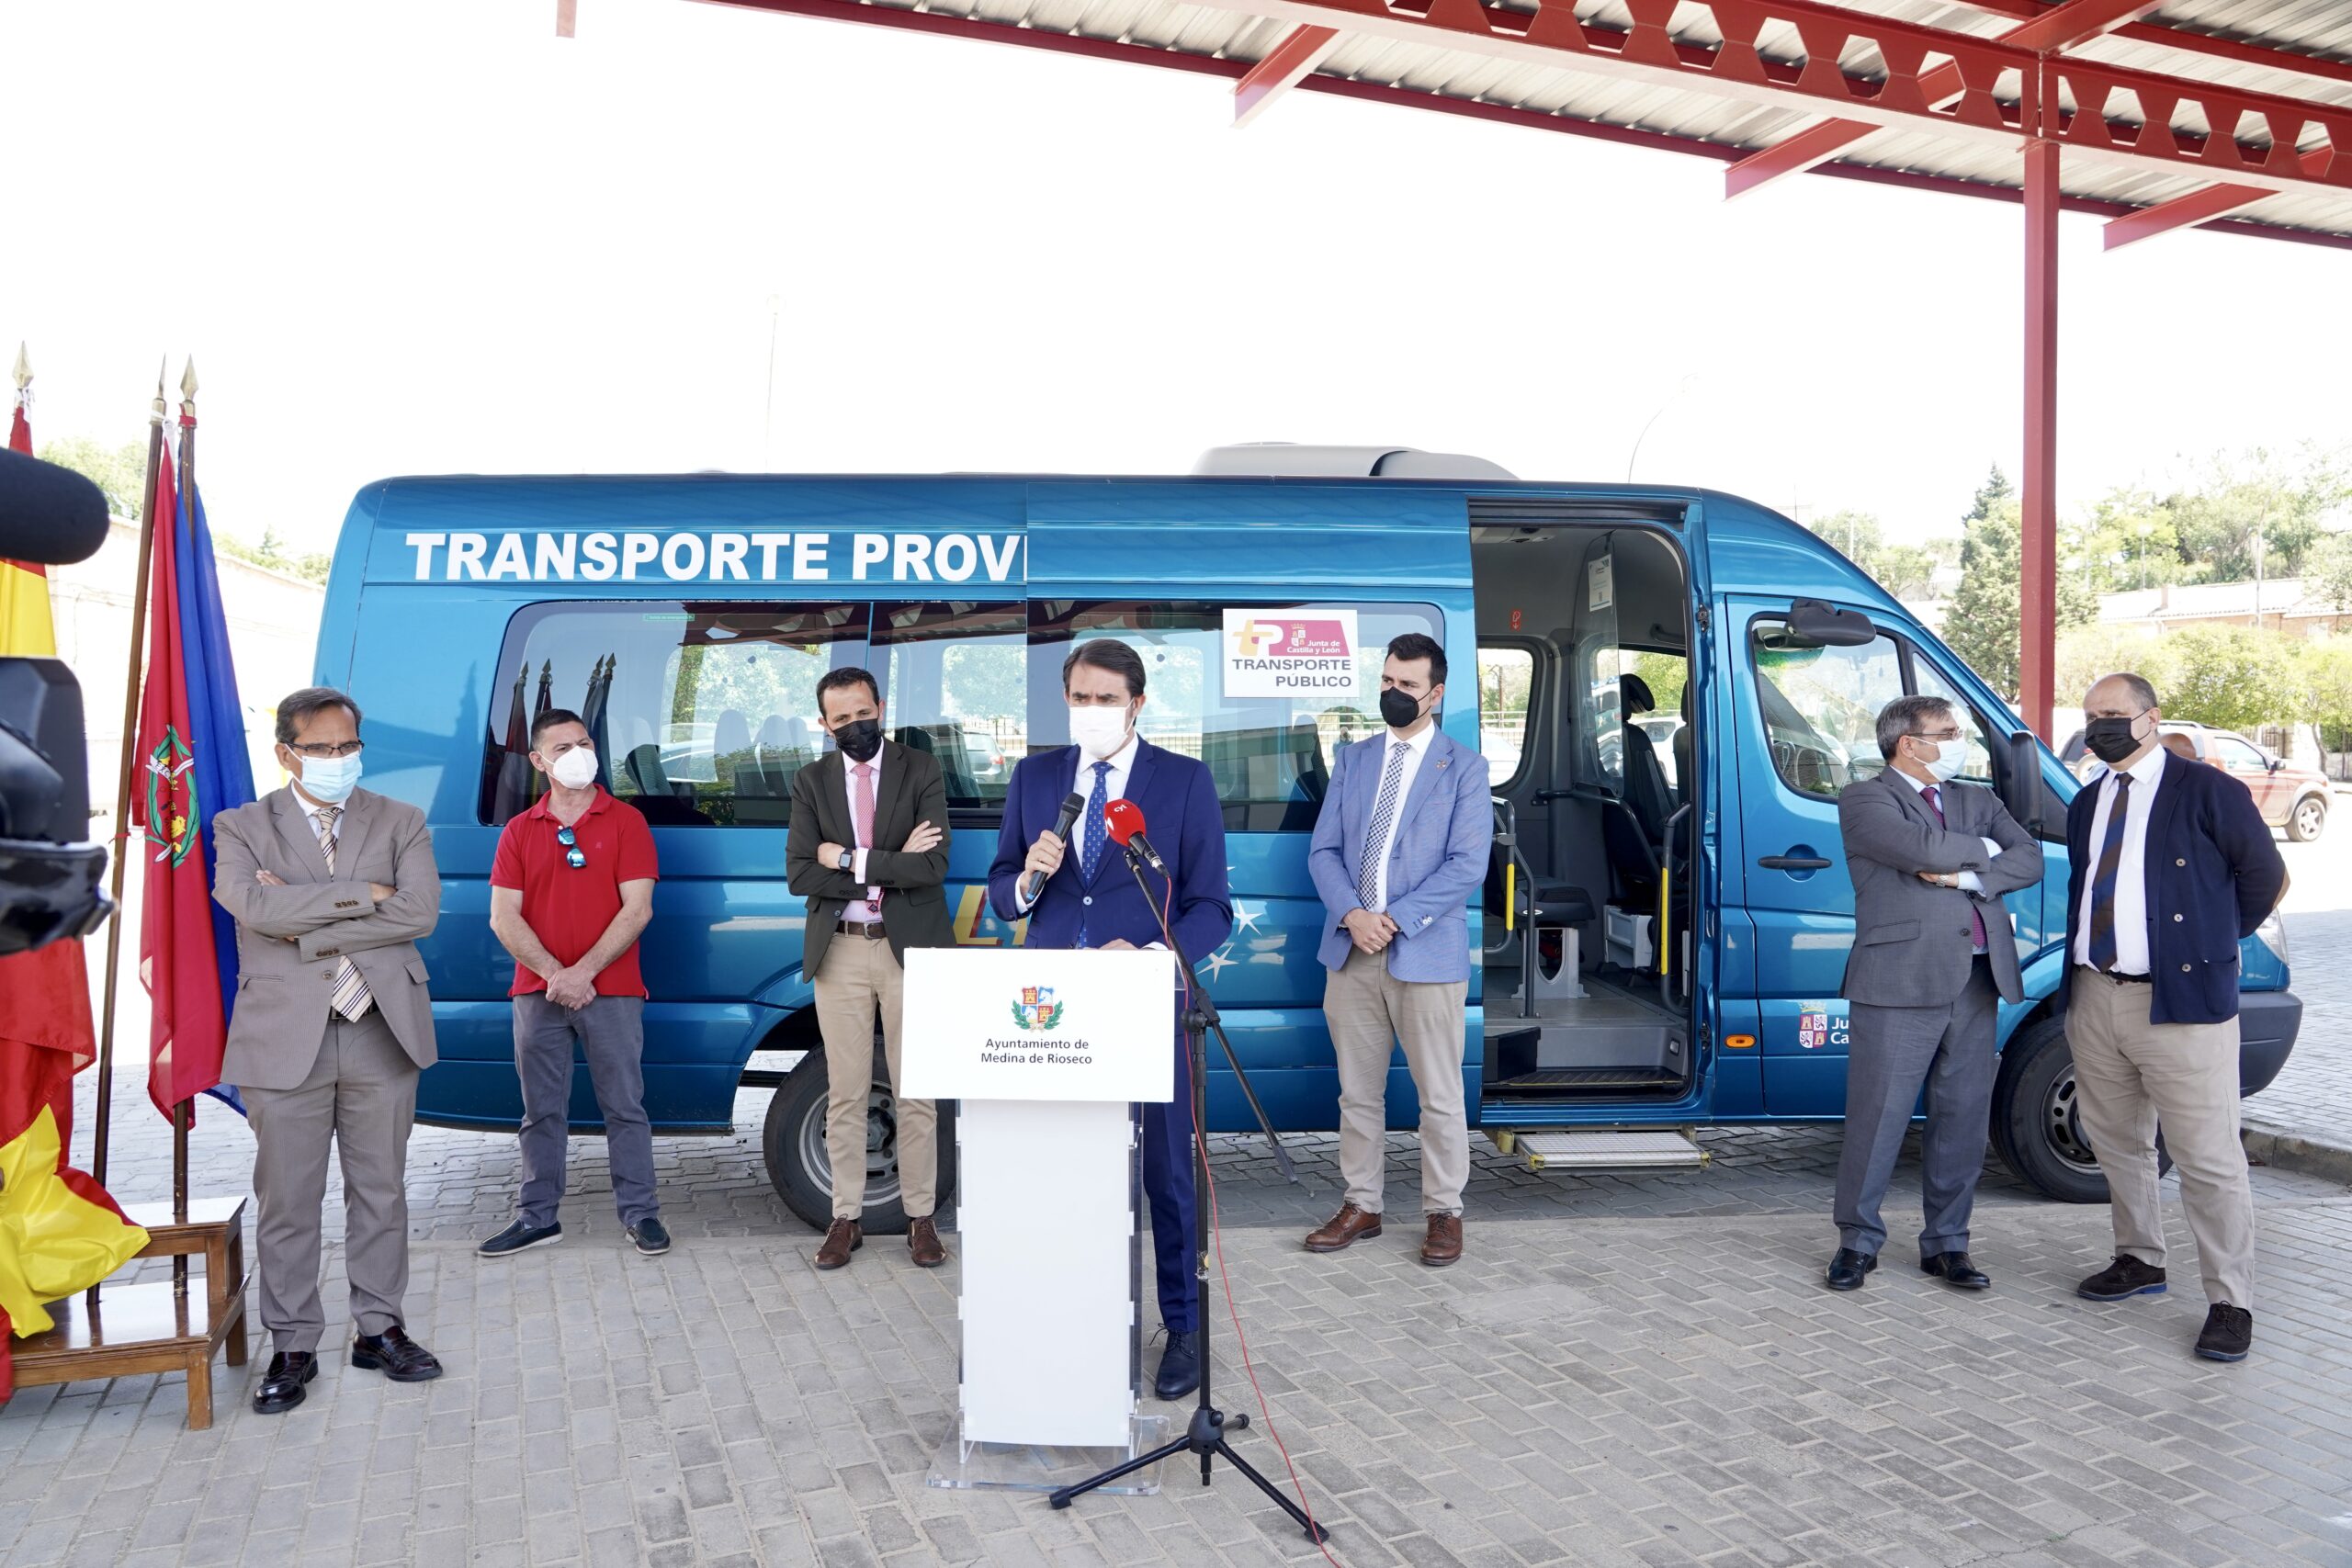 El bono transporte a la demanda llega hoy a 135.000 vecinos de Valladolid y Segovia